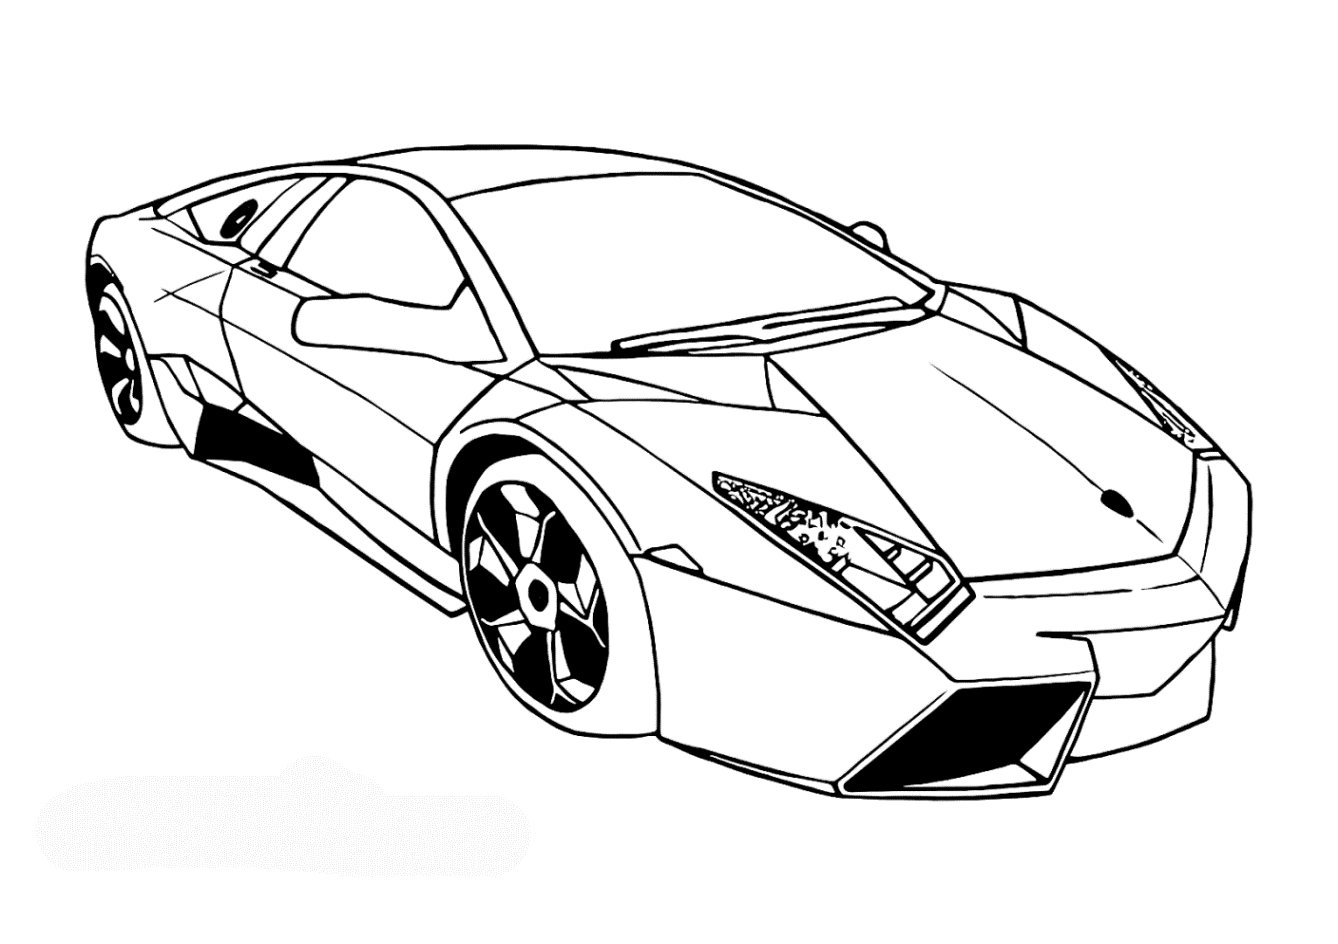 Lamborghini Drawing Outline at GetDrawings | Free download